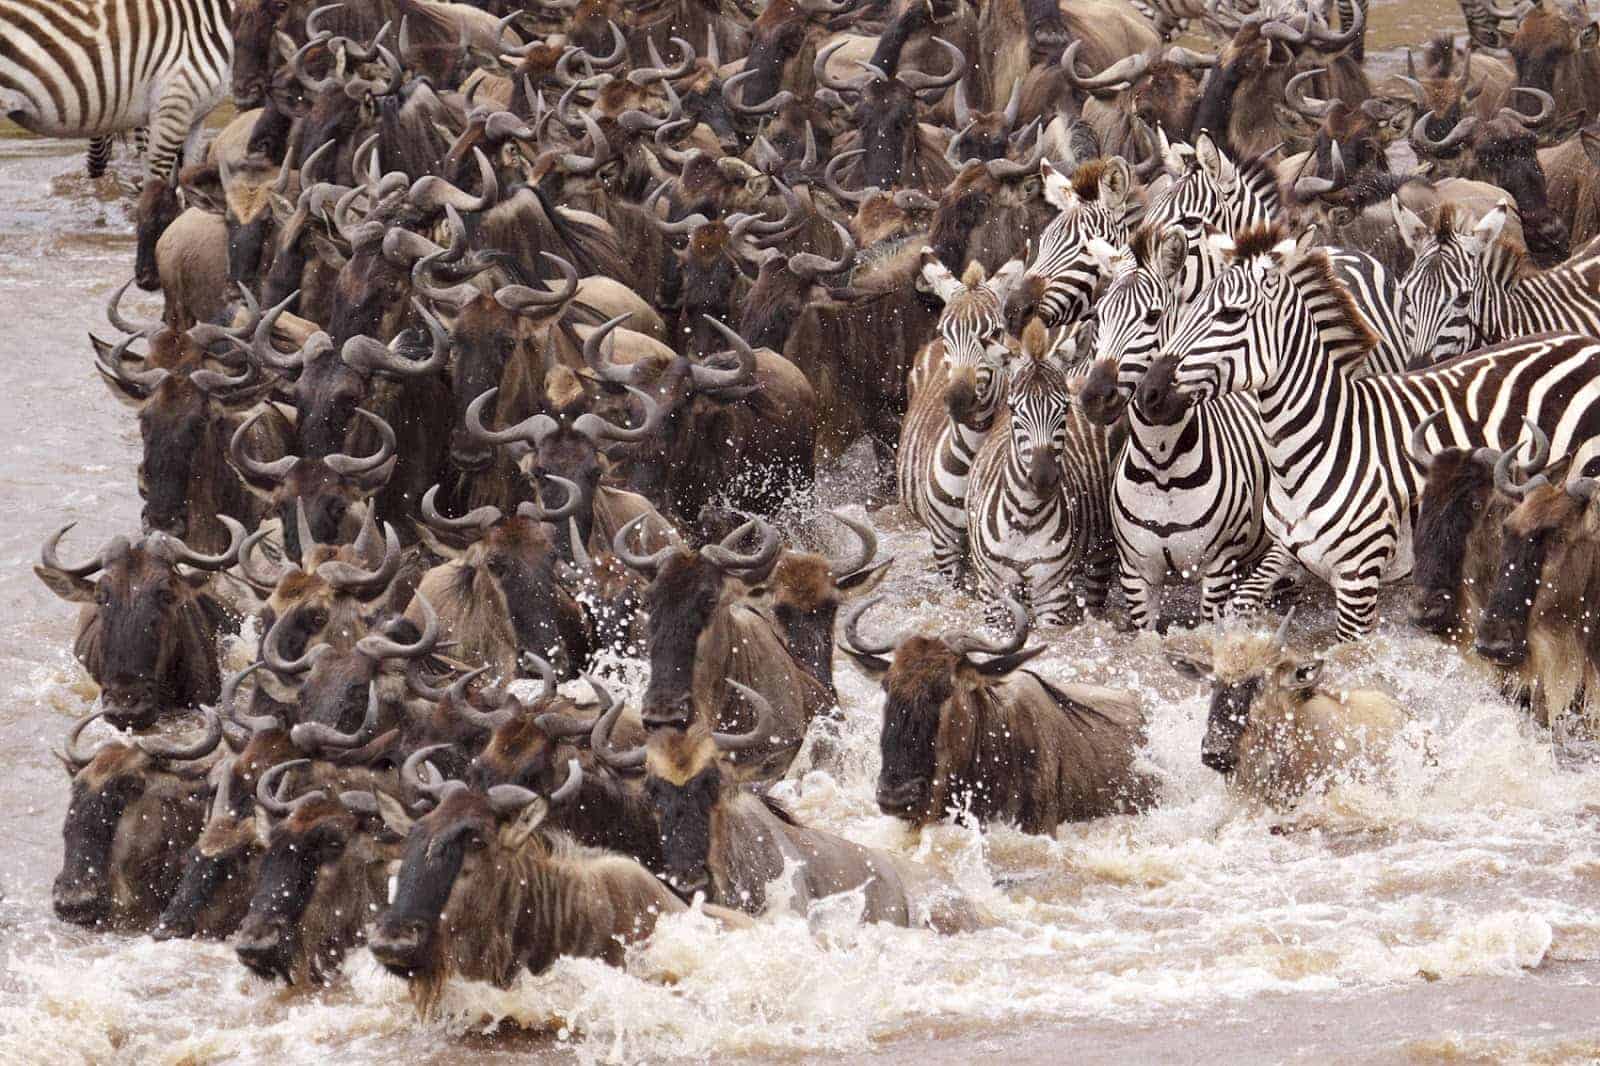 migration safari in kenya